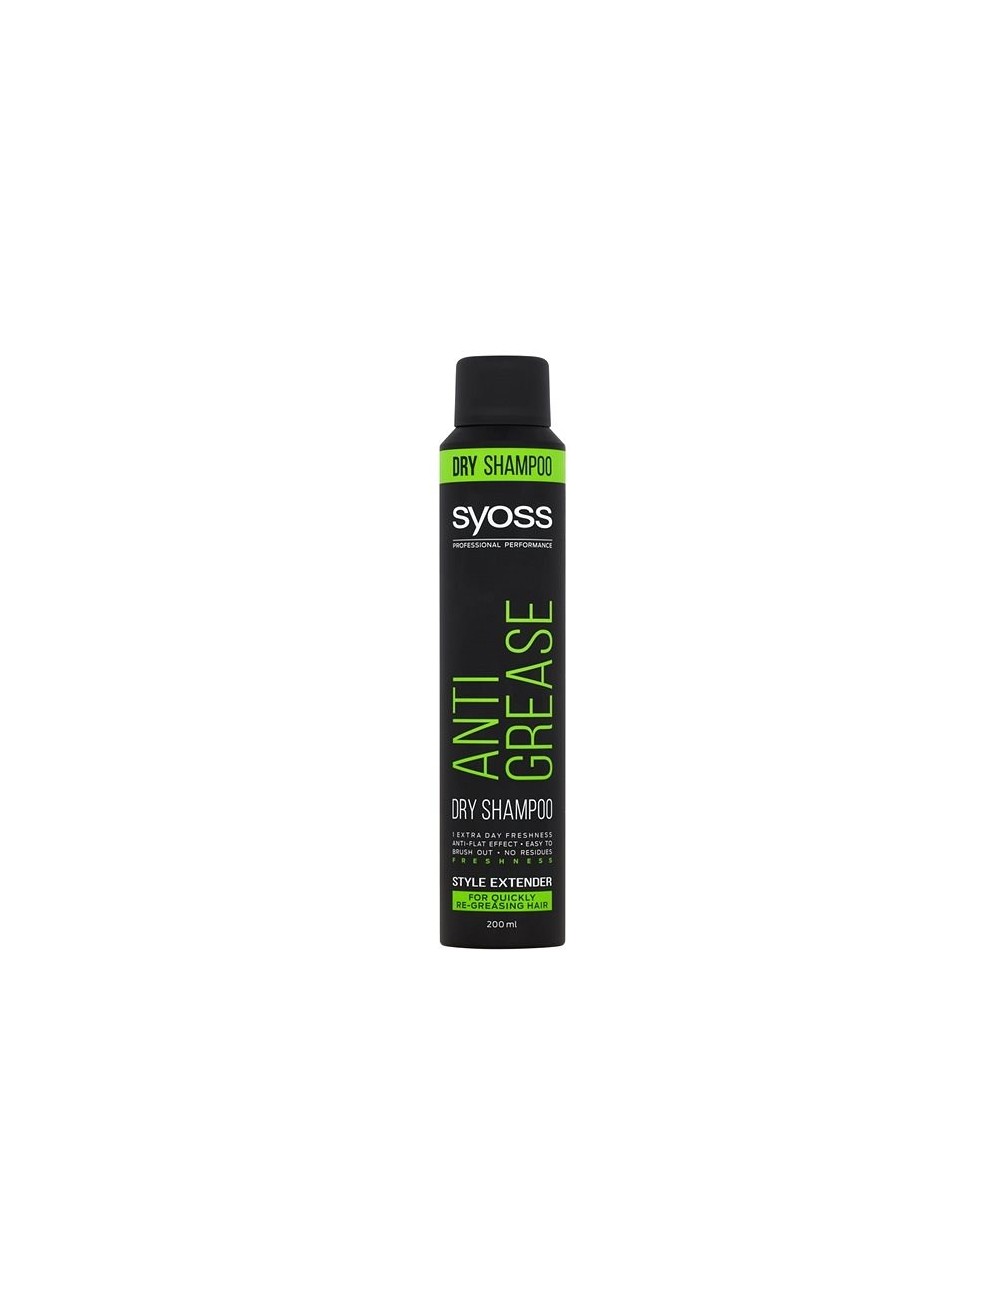 Syoss anti-grease 200ml – suchy szampon do włosów szybko przetłuszczających się